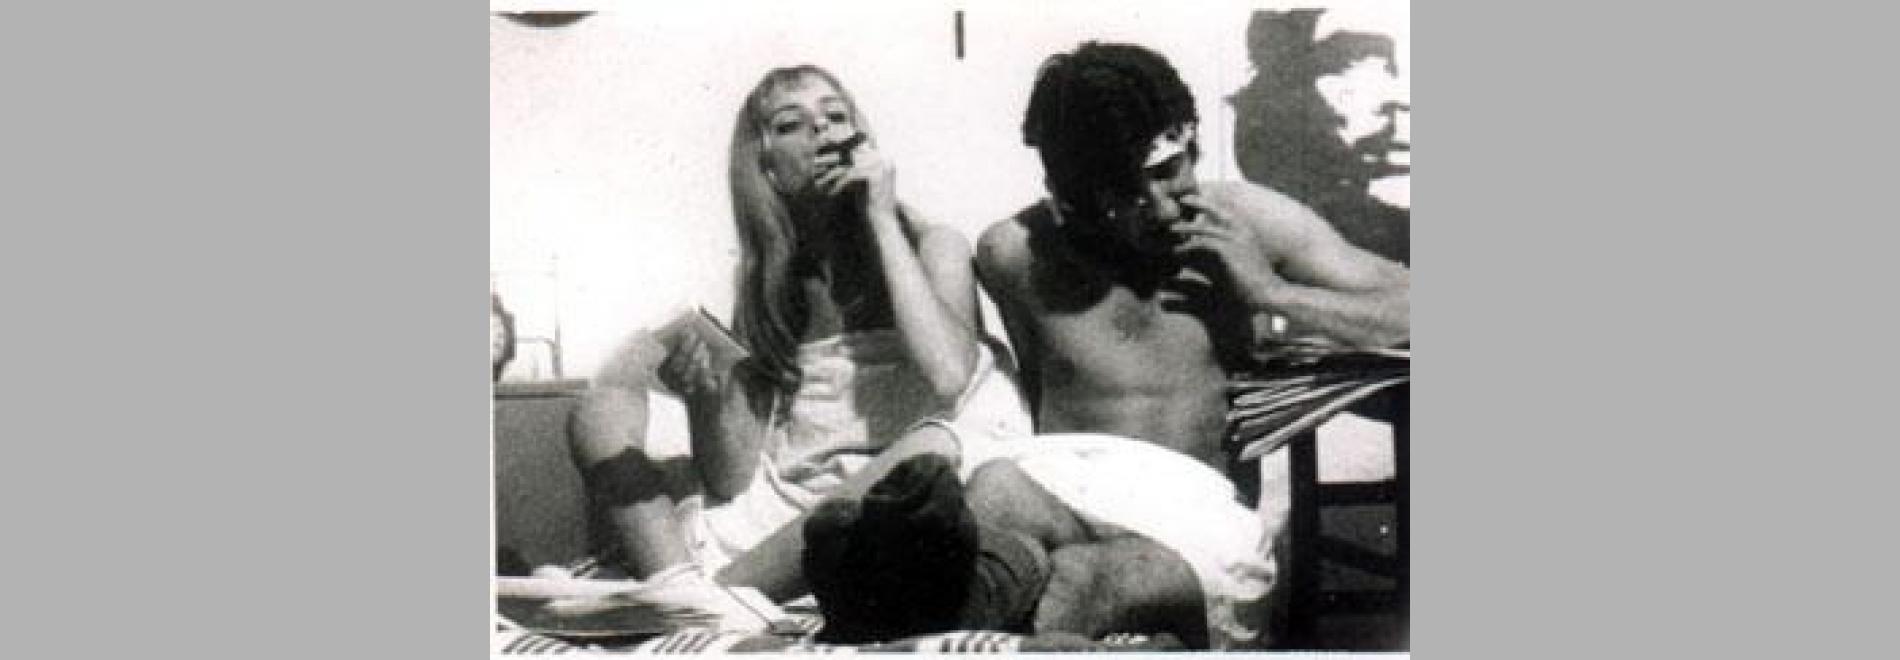 Dafnis y Cloe (Antoni Padrós, 1969)